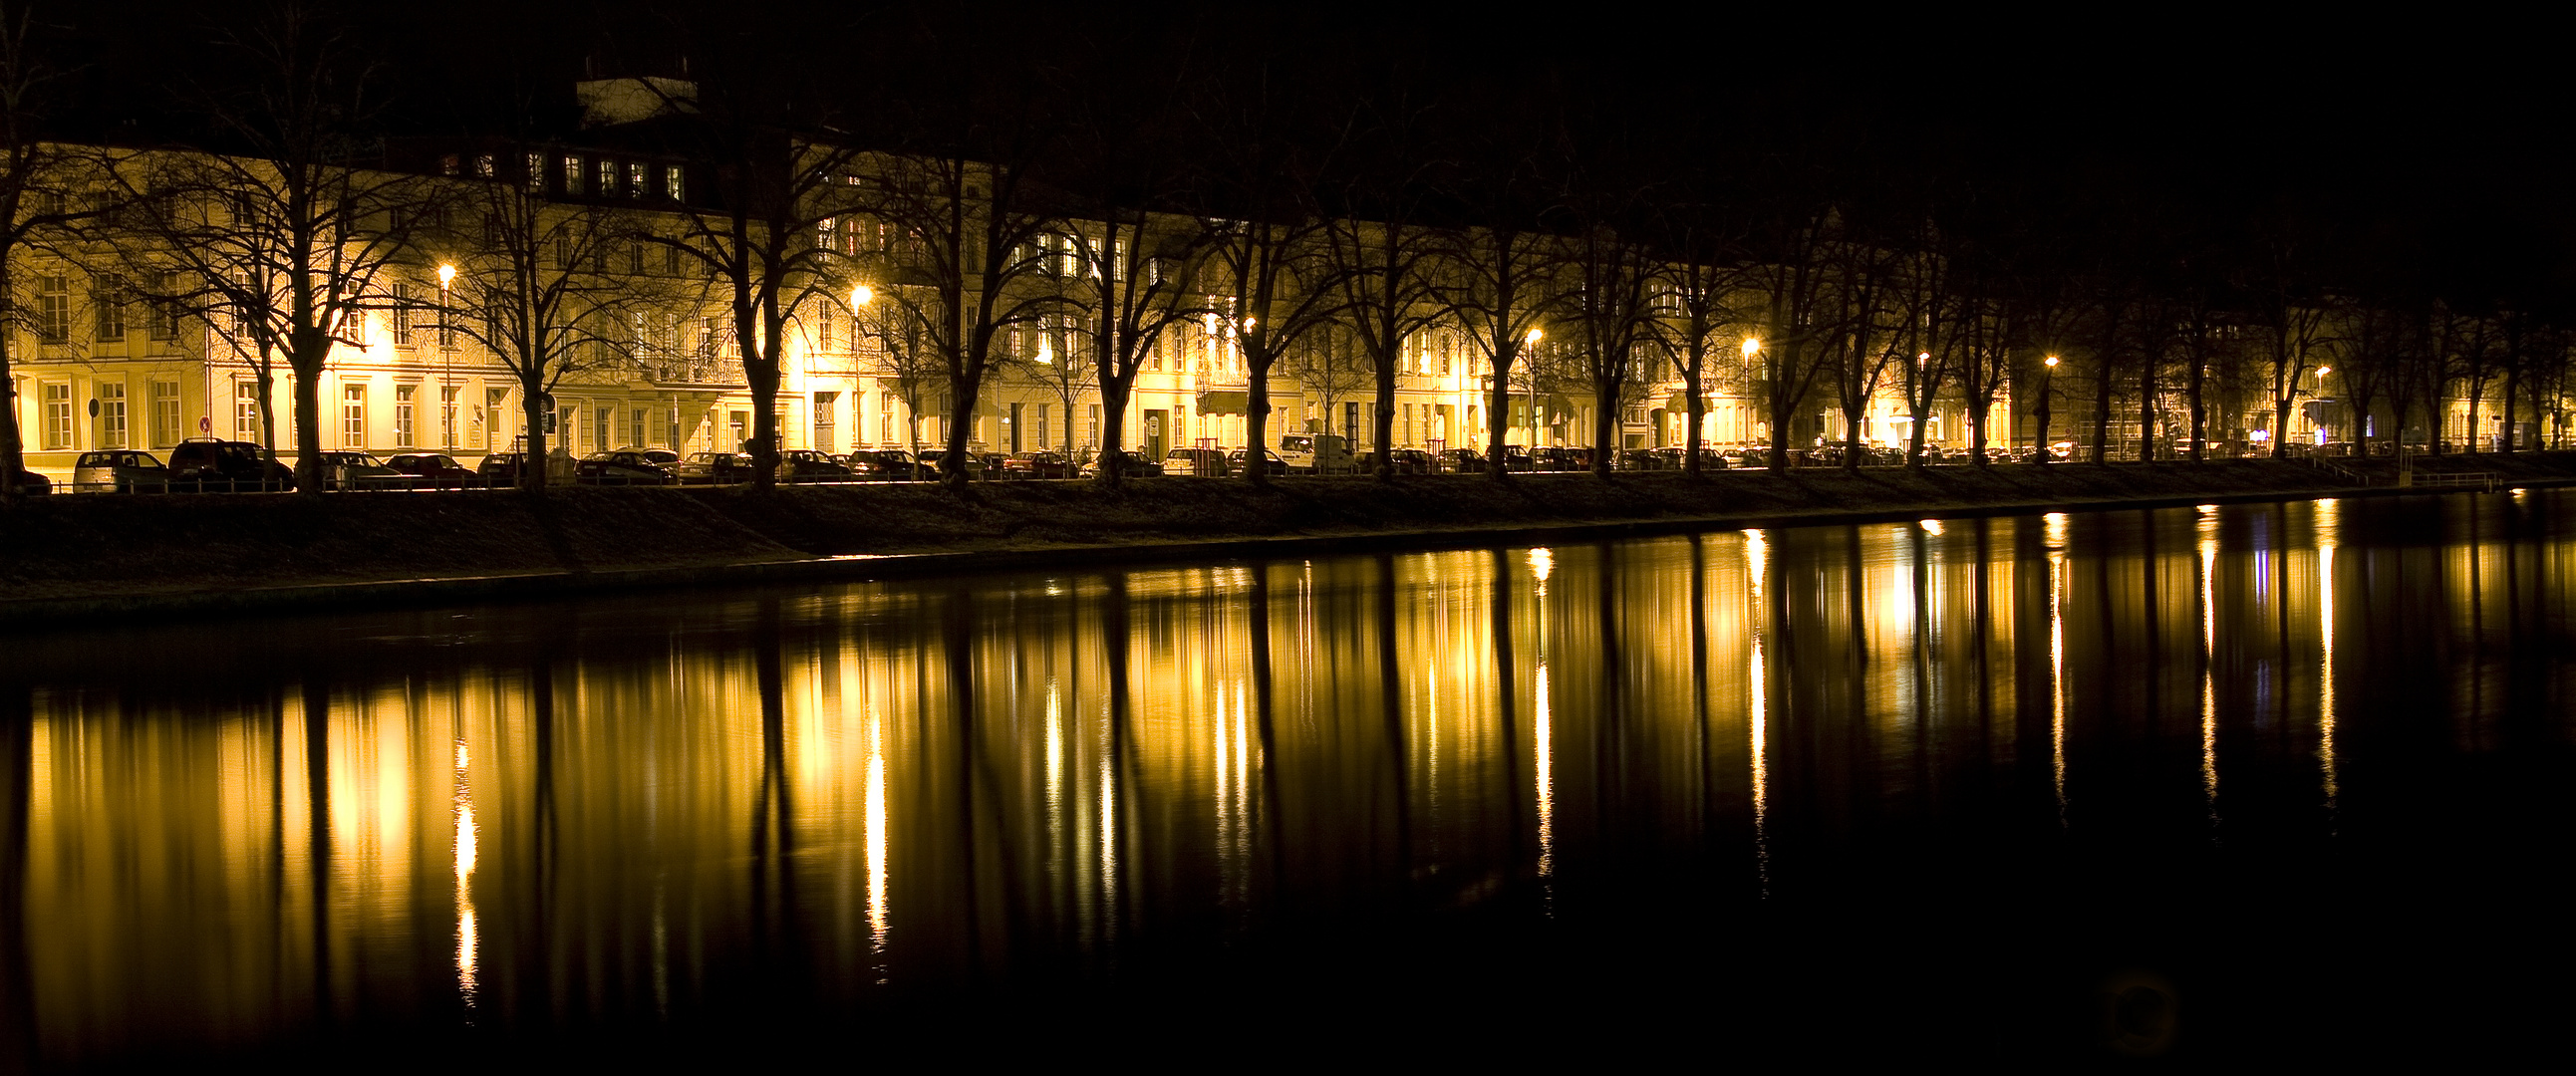 Nachts in Schwerin